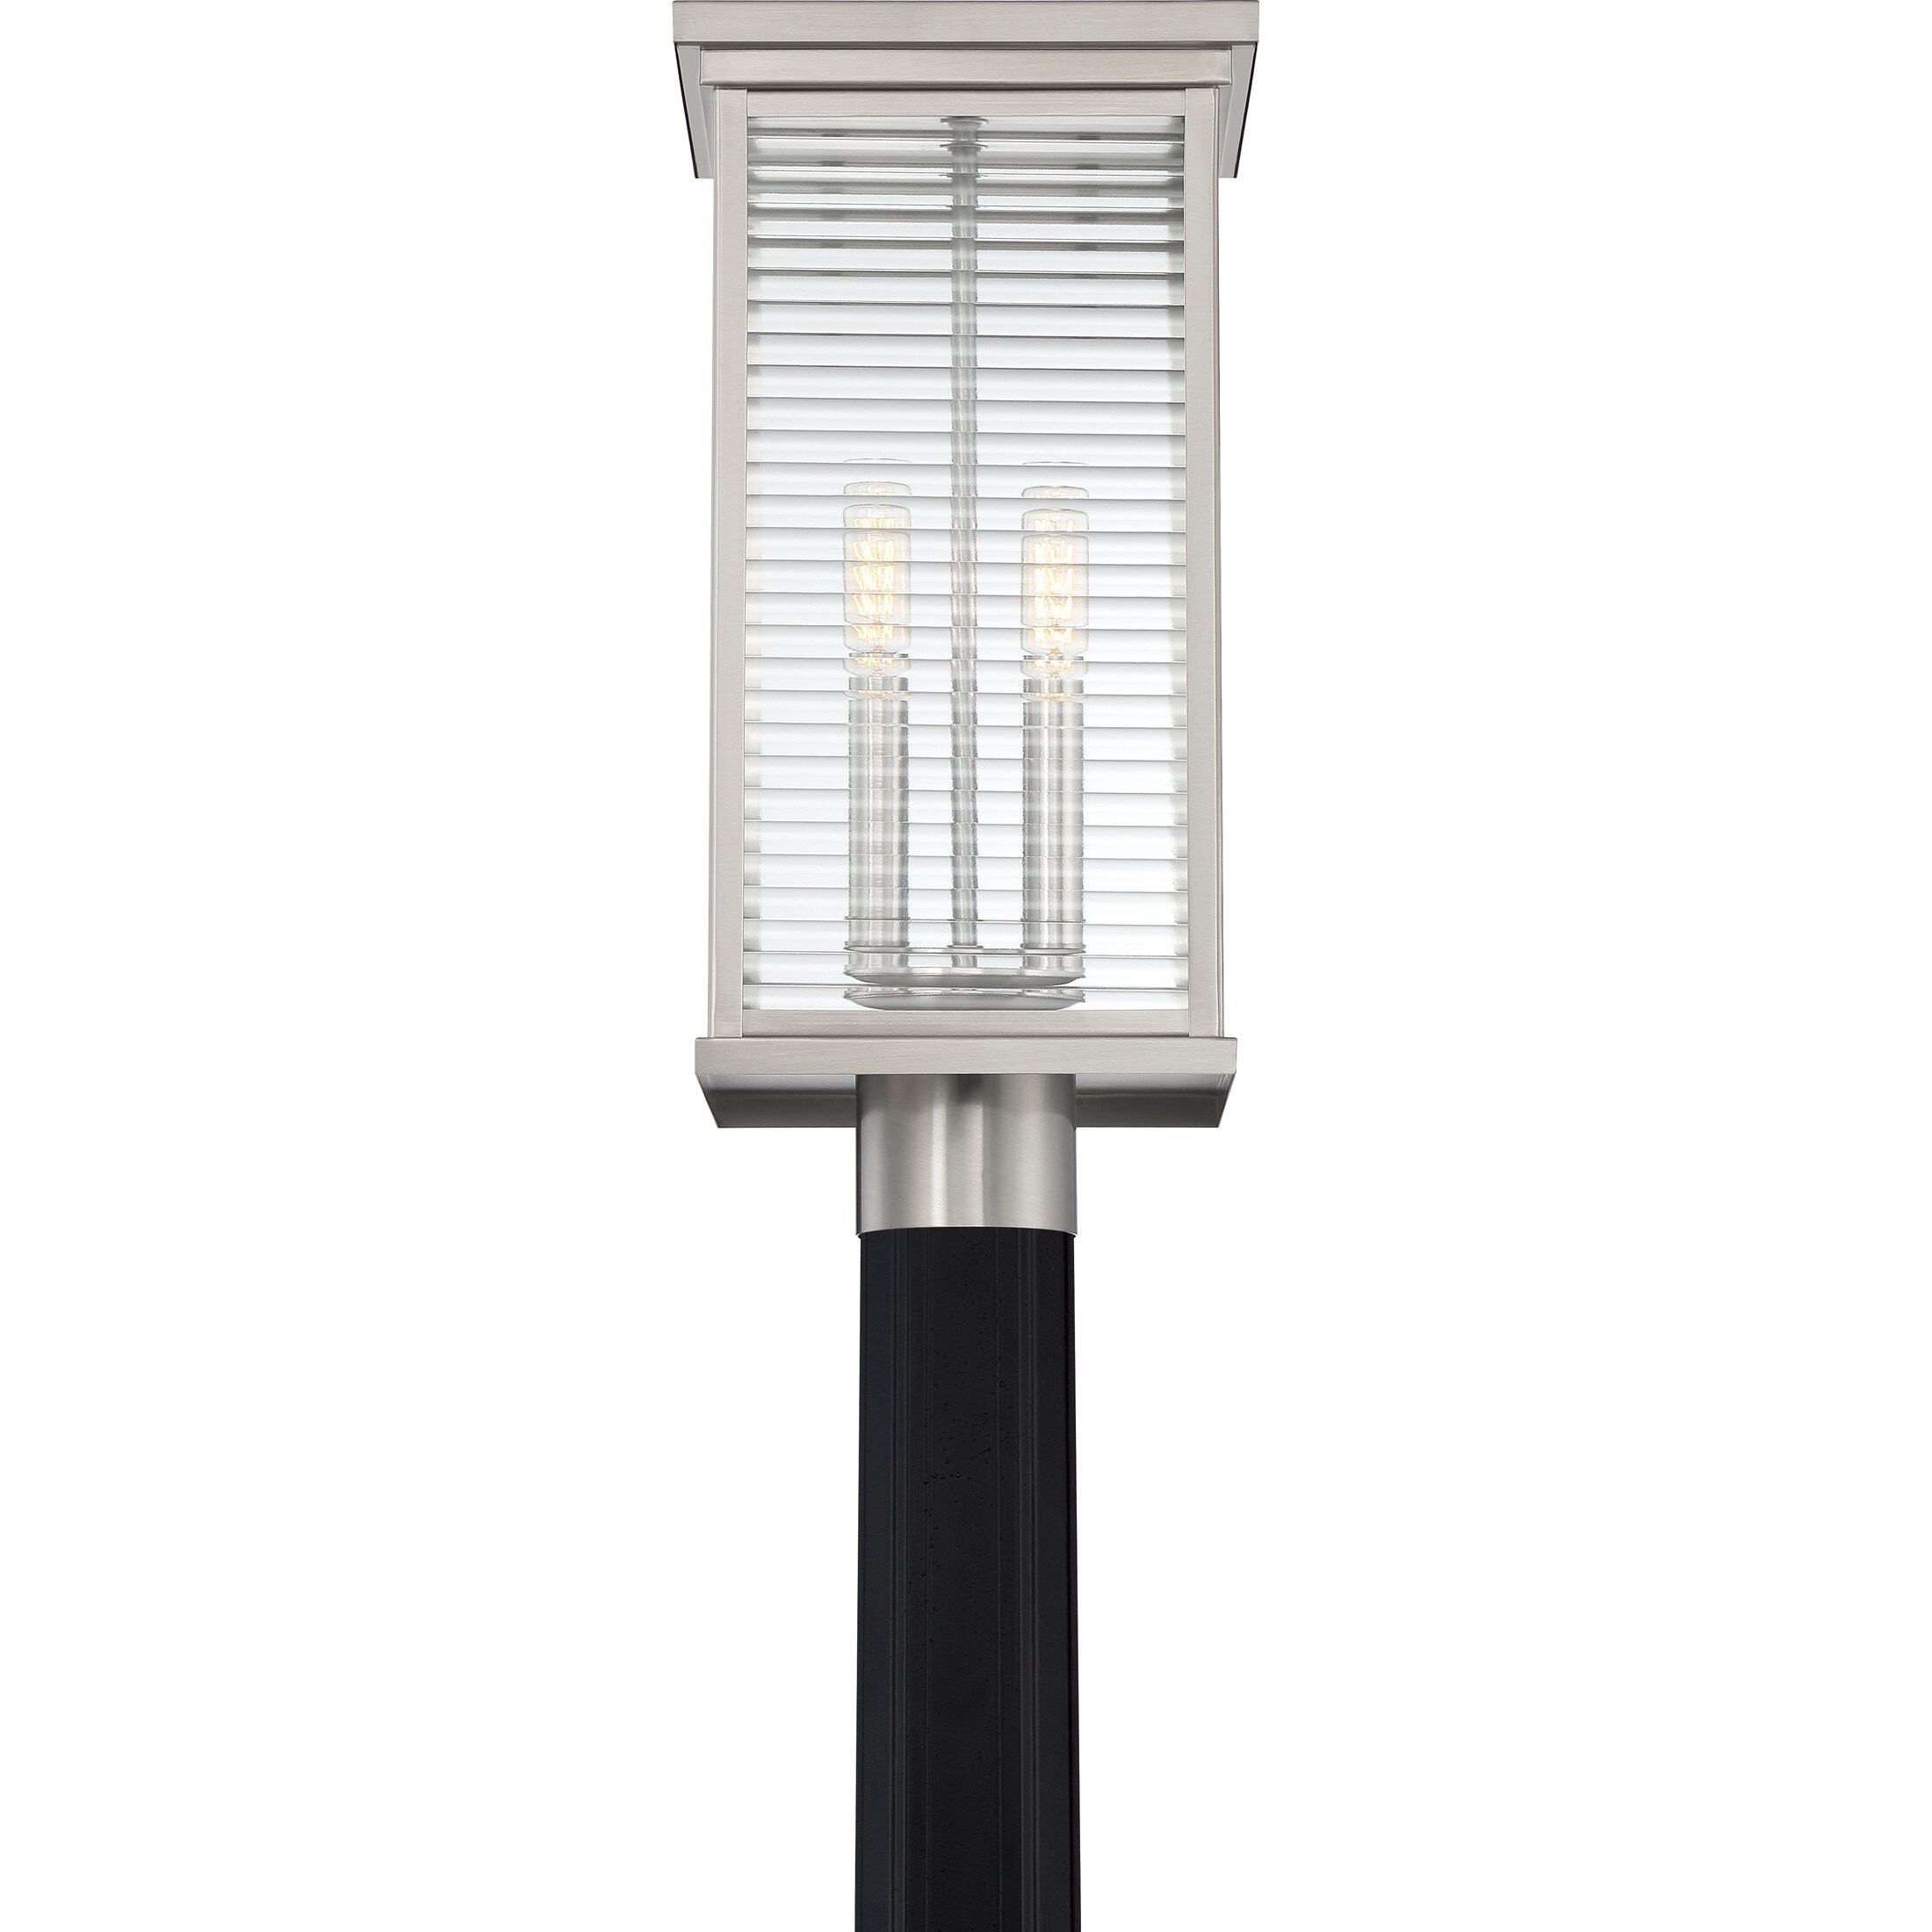 Quoizel Gardner Stainless Steel 2-light Outdoor Post Lantern